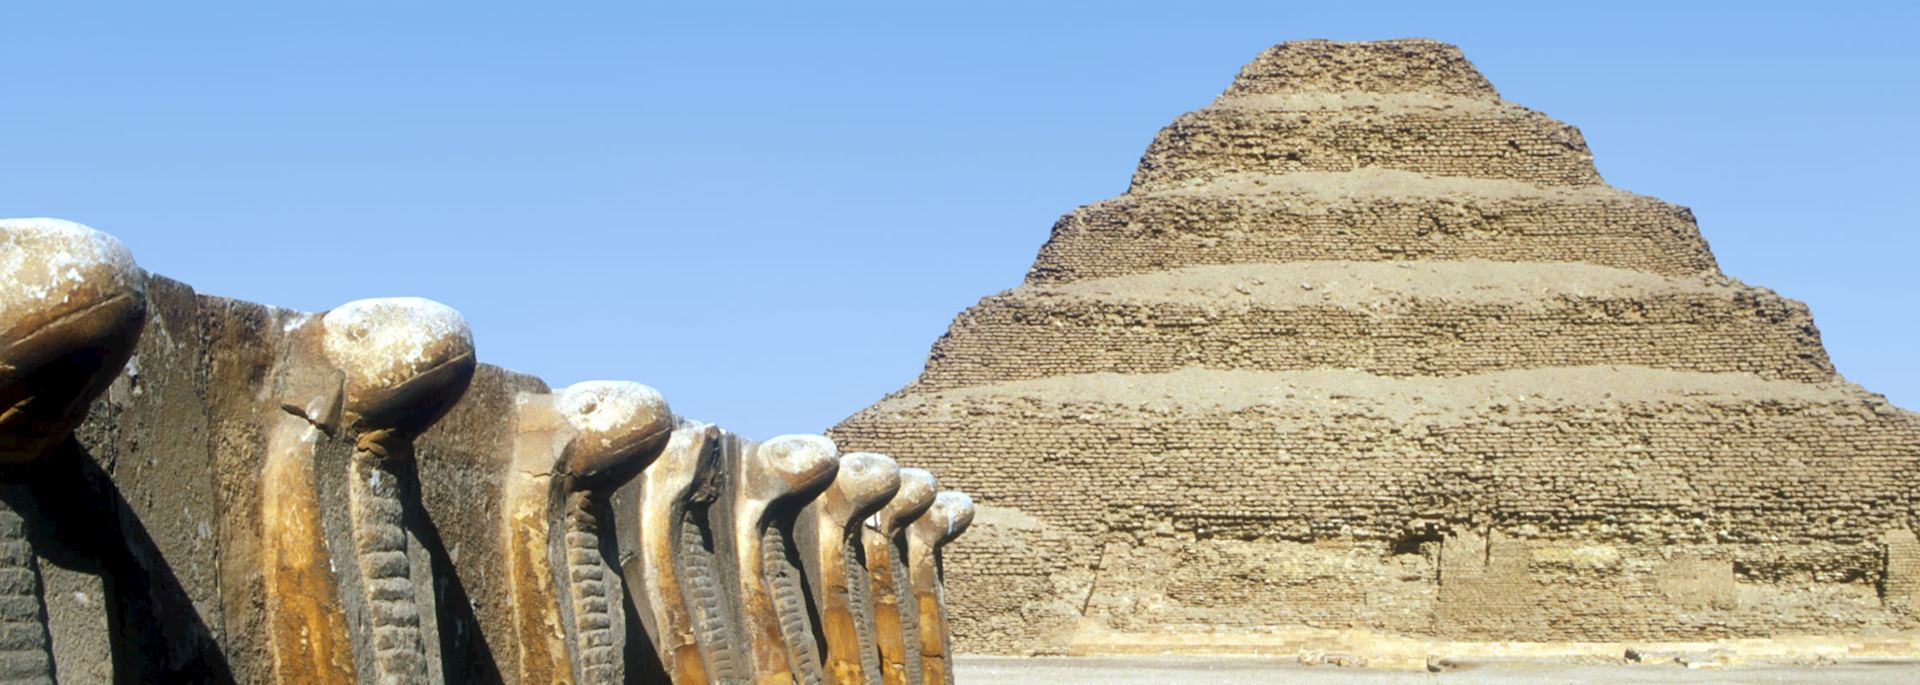 The step pyramid at Saqqara